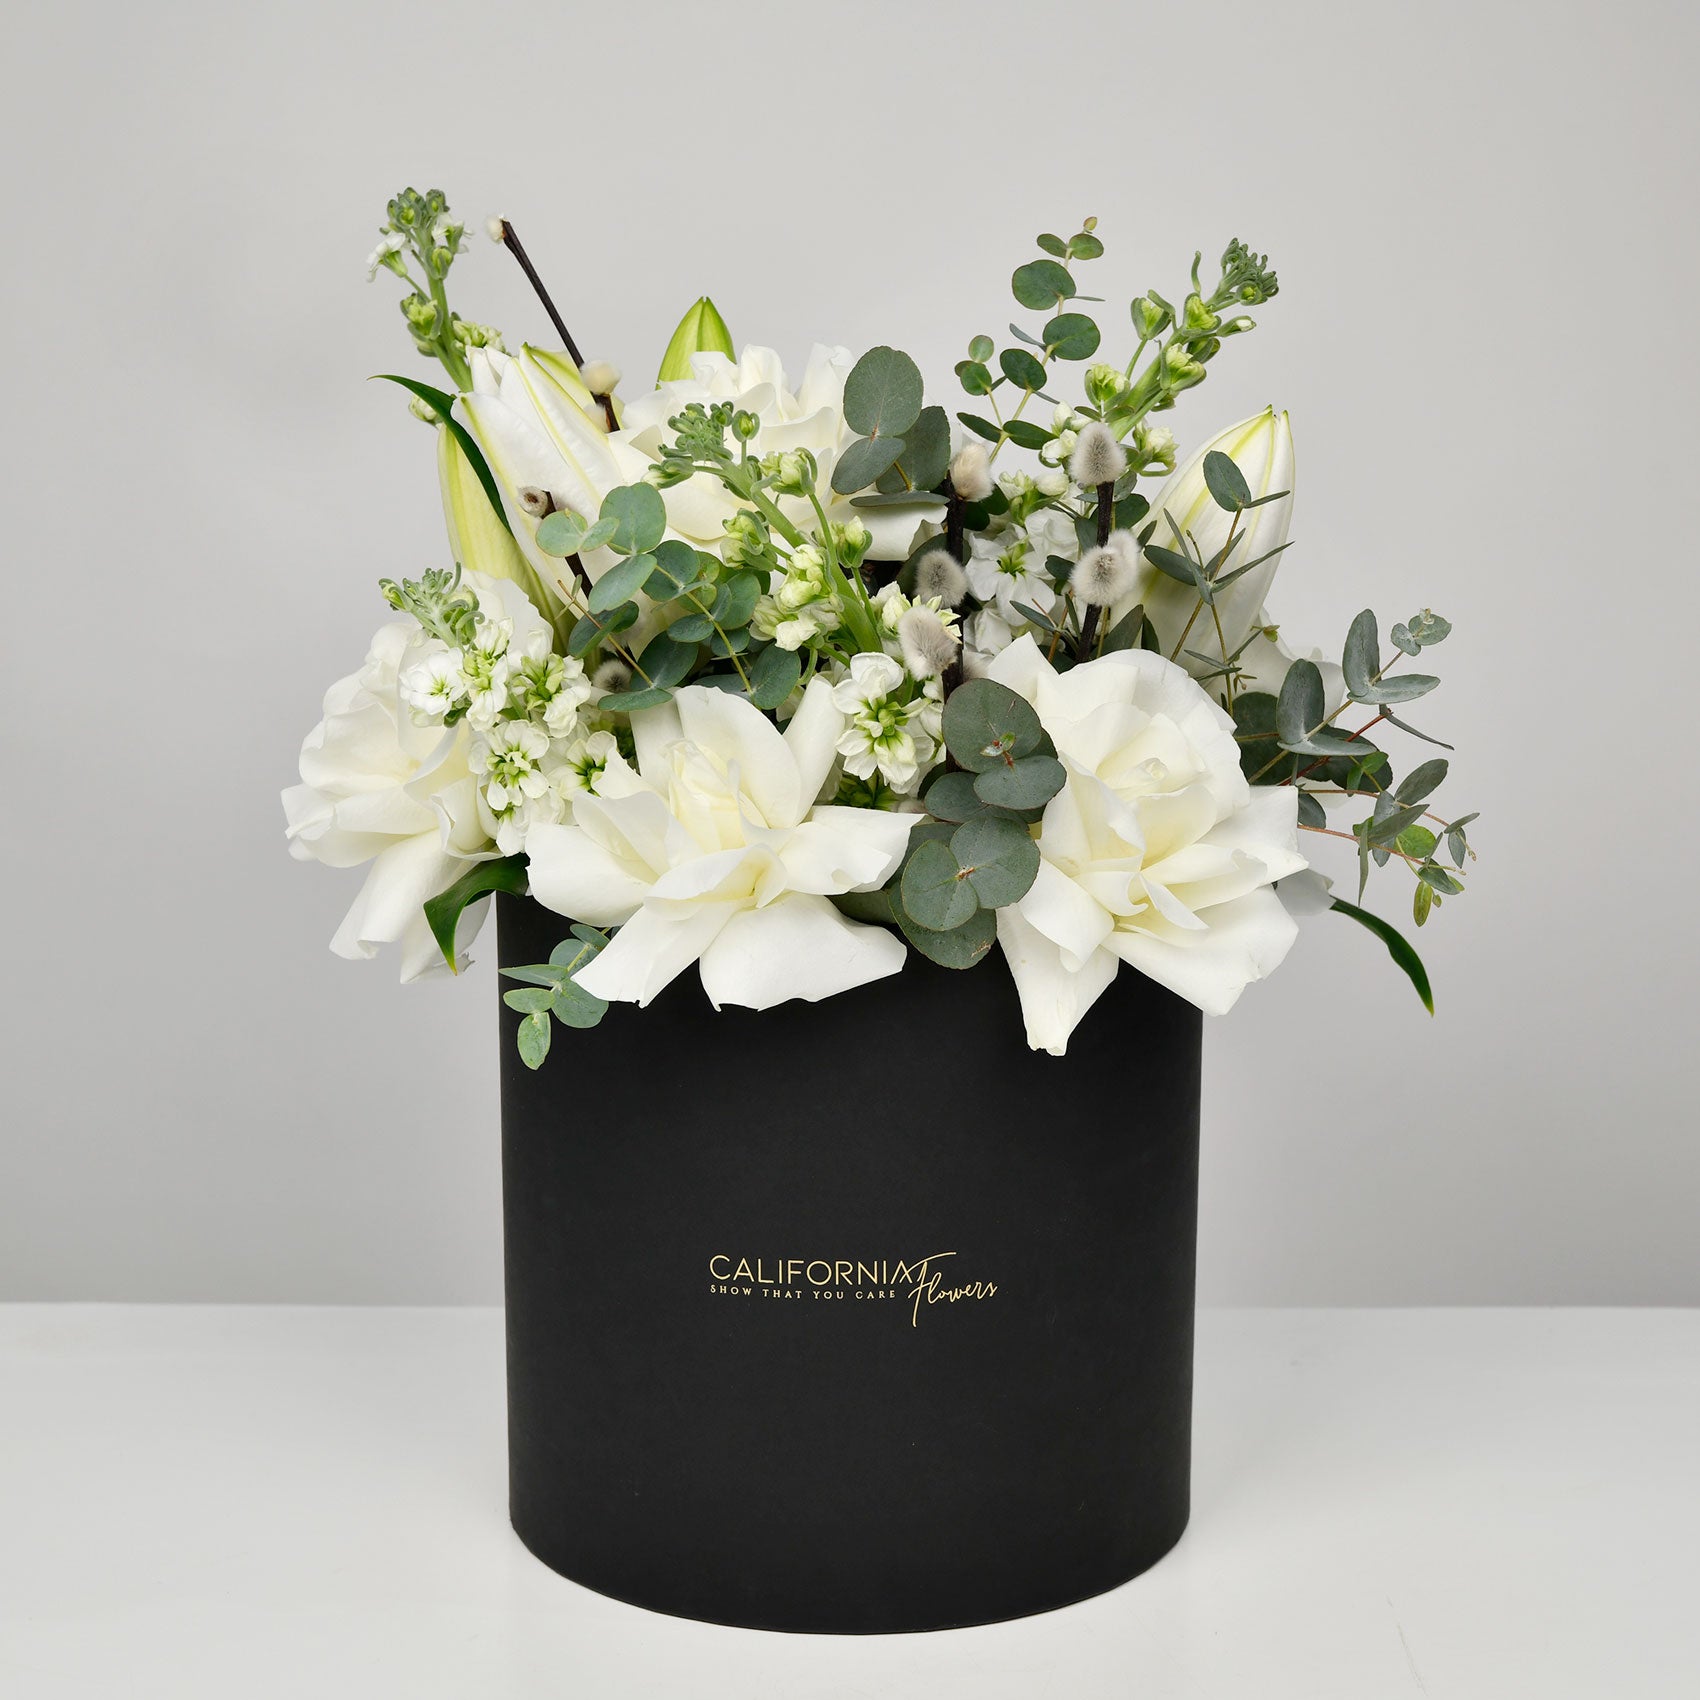 Aranjament floral in cutie neagra cu trandafiri speciali si crini